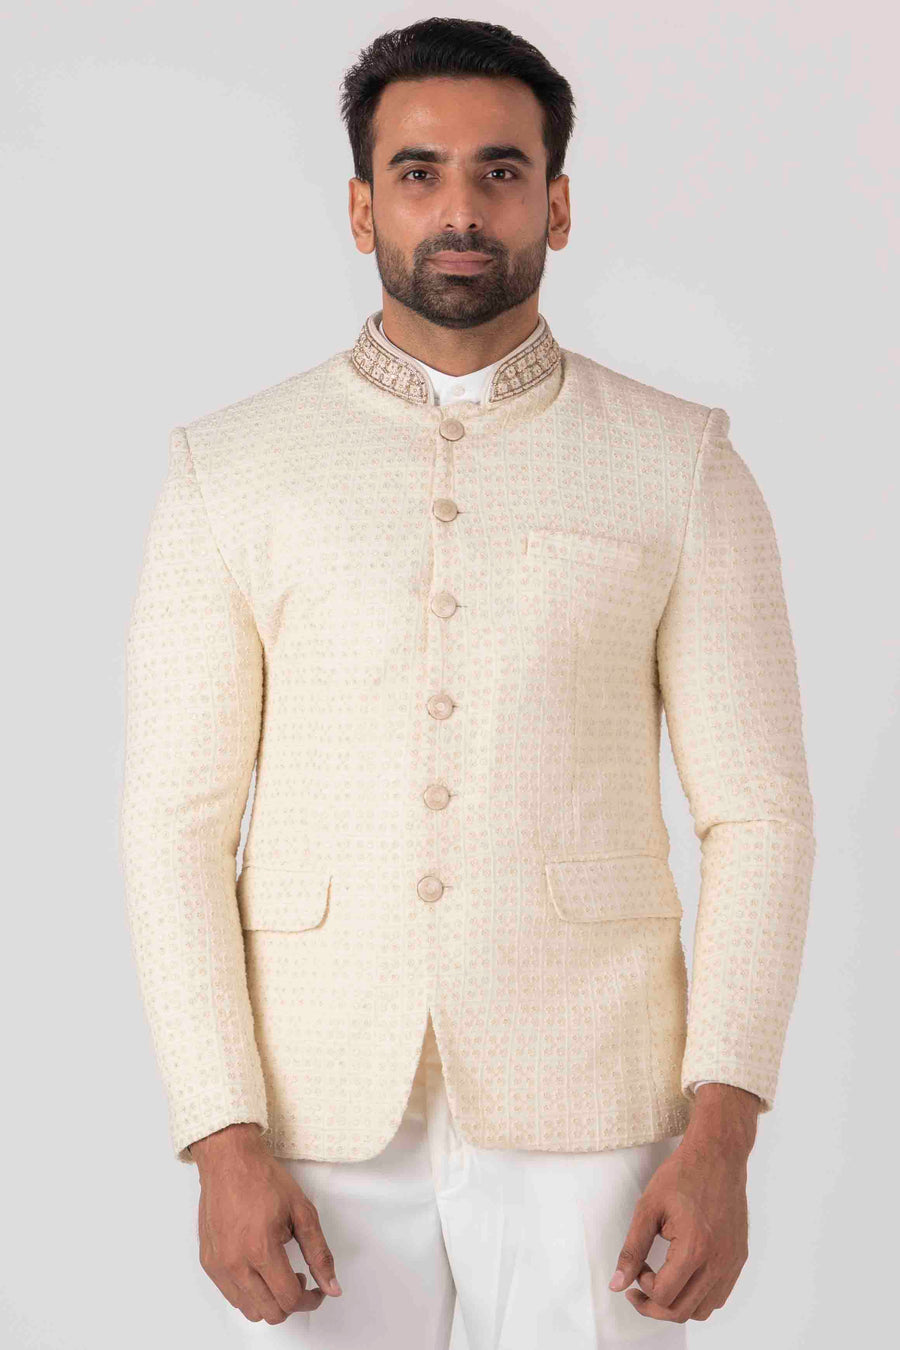 Textured Rose Gold GTC- Jodhpuri Suit, Silky Jacquard at Rs 10500/piece in  Mumbai